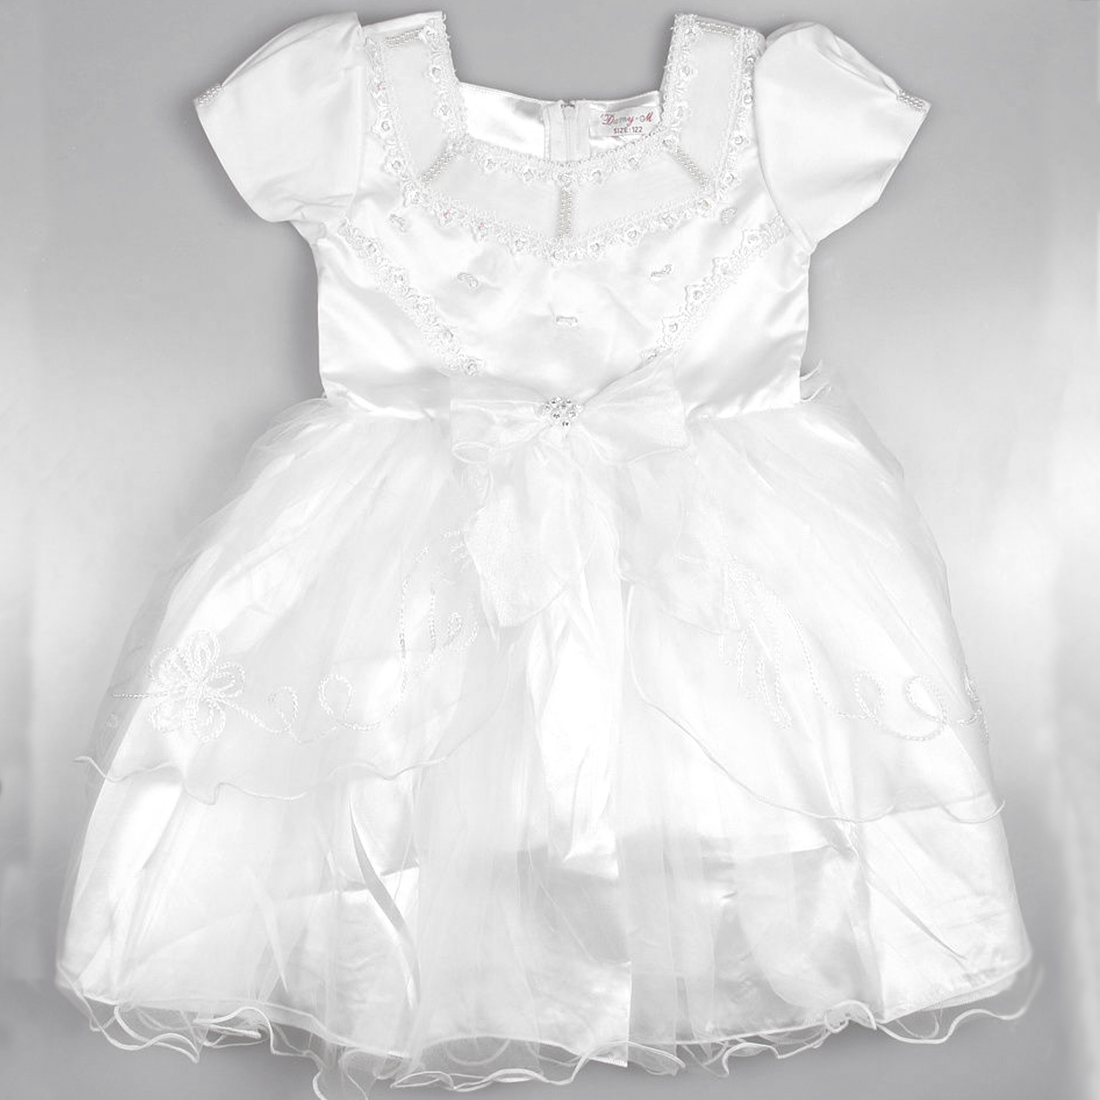 Дами м. Damy-m платье pm901. Платье для девочки damy-m KV-018. Damy-m детская одежда производитель. Платье детское бежевое дорогое.